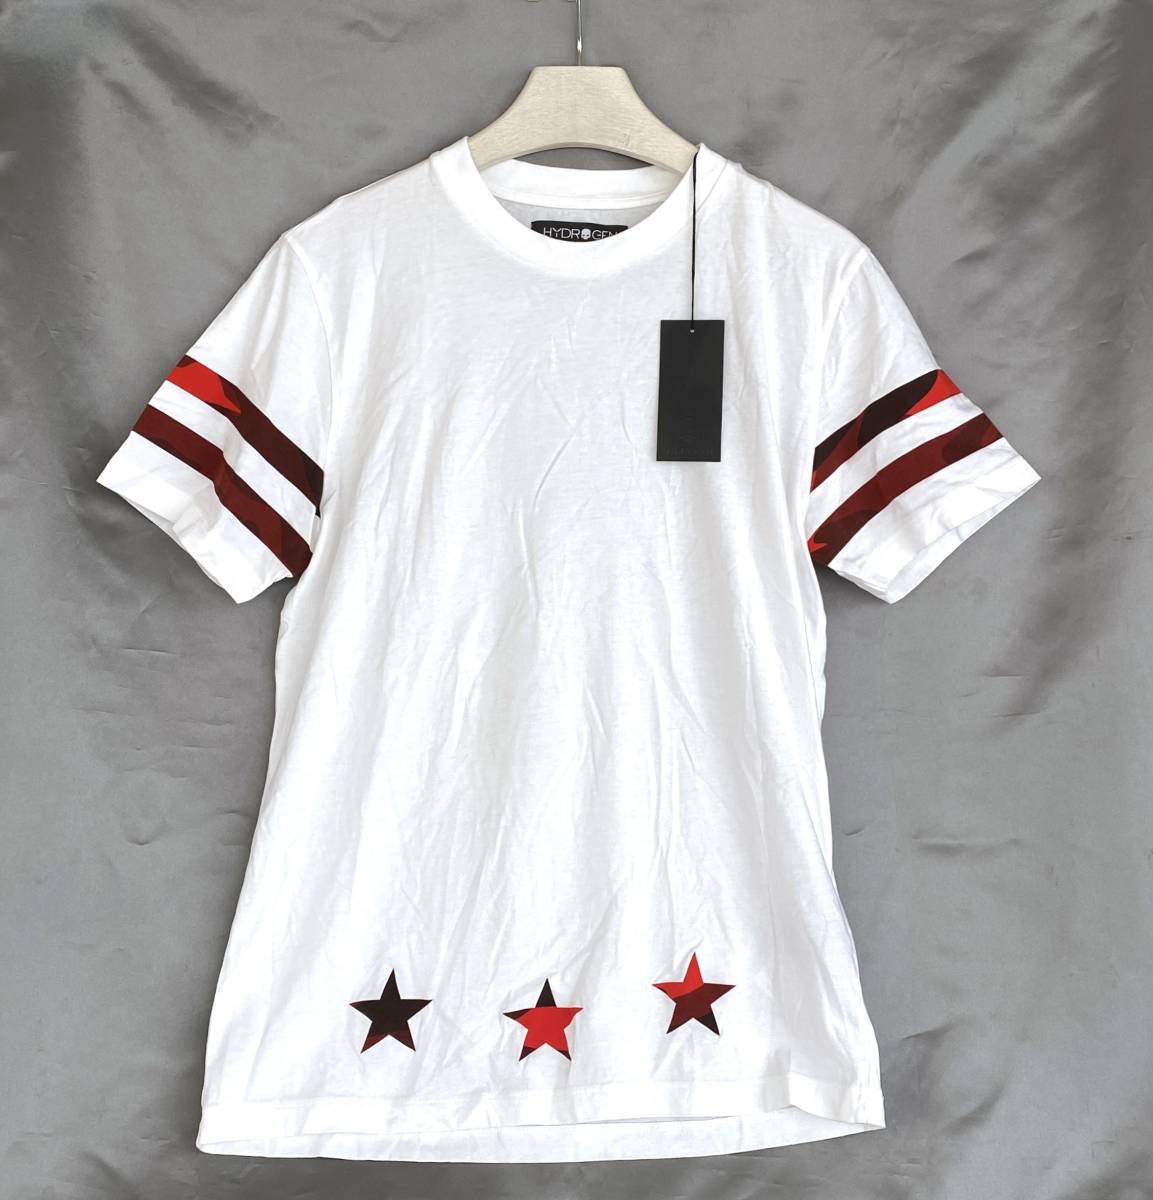 新品タグ付 HYDROGEN ハイドロゲン Tシャツ メンズ L 白 赤 背面プリント 星 スター スカル 迷彩 カモフ 半袖 ドクロ hockey camo D465